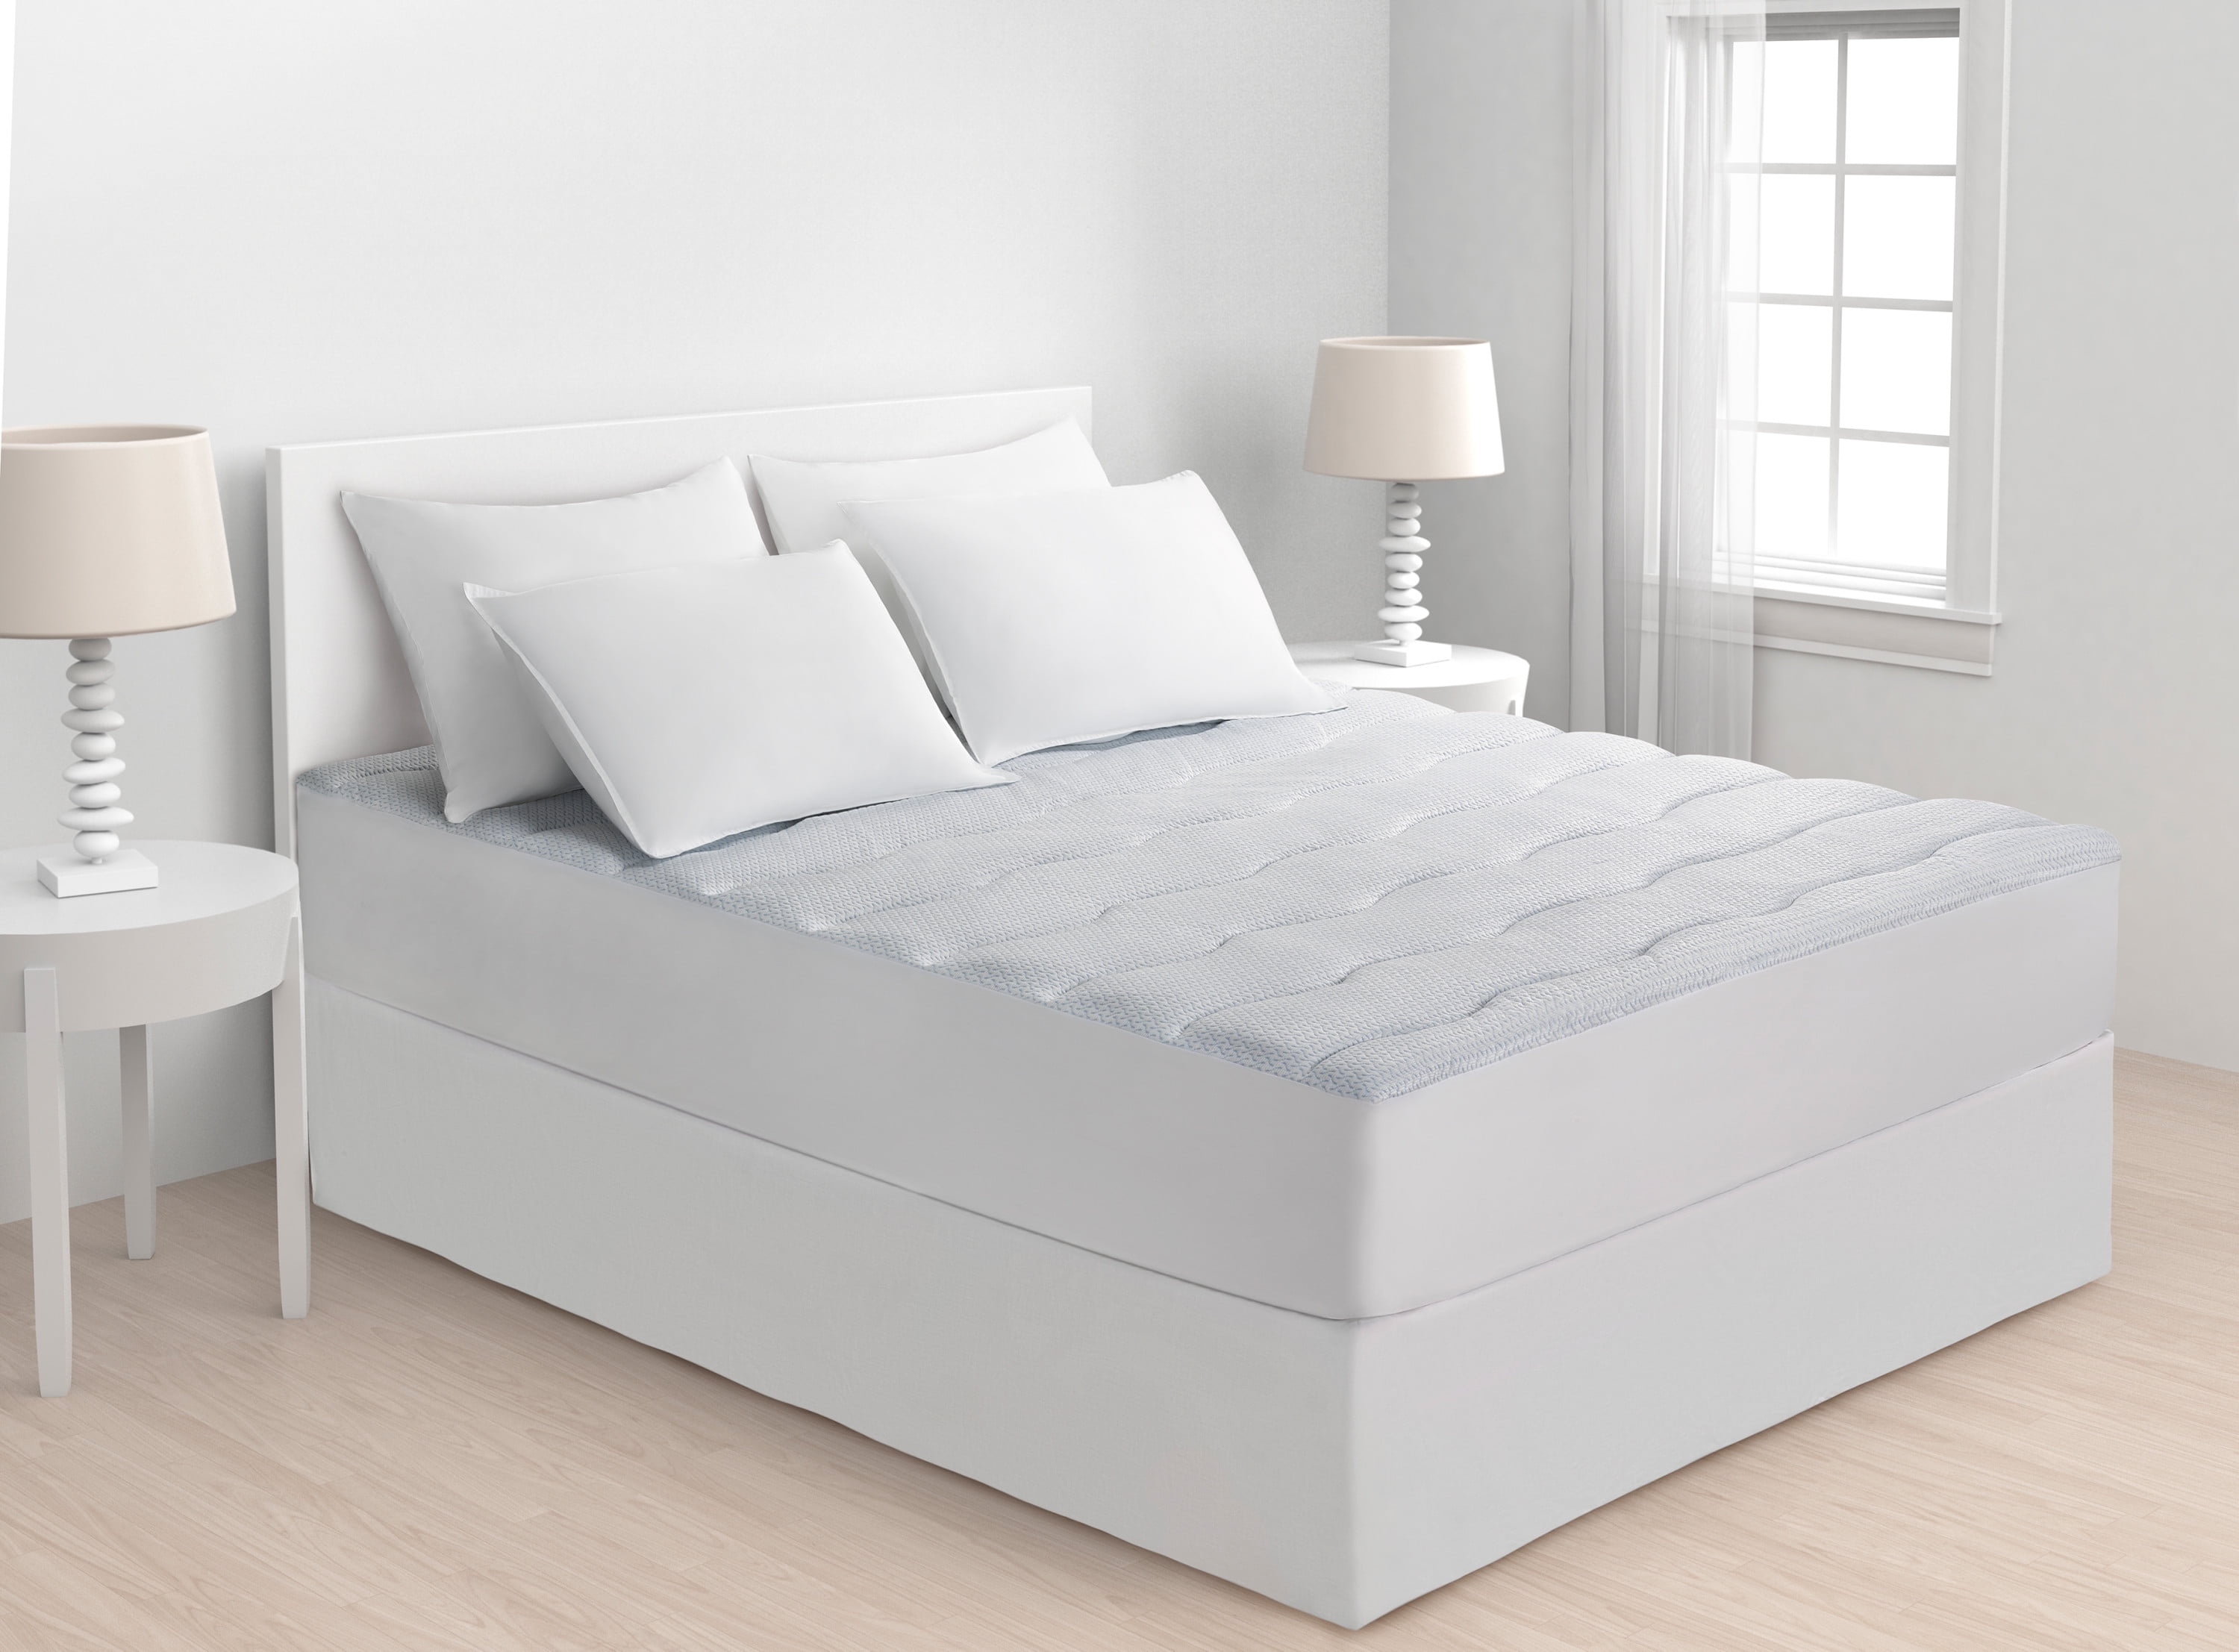 beautyrest mattress topper walmart